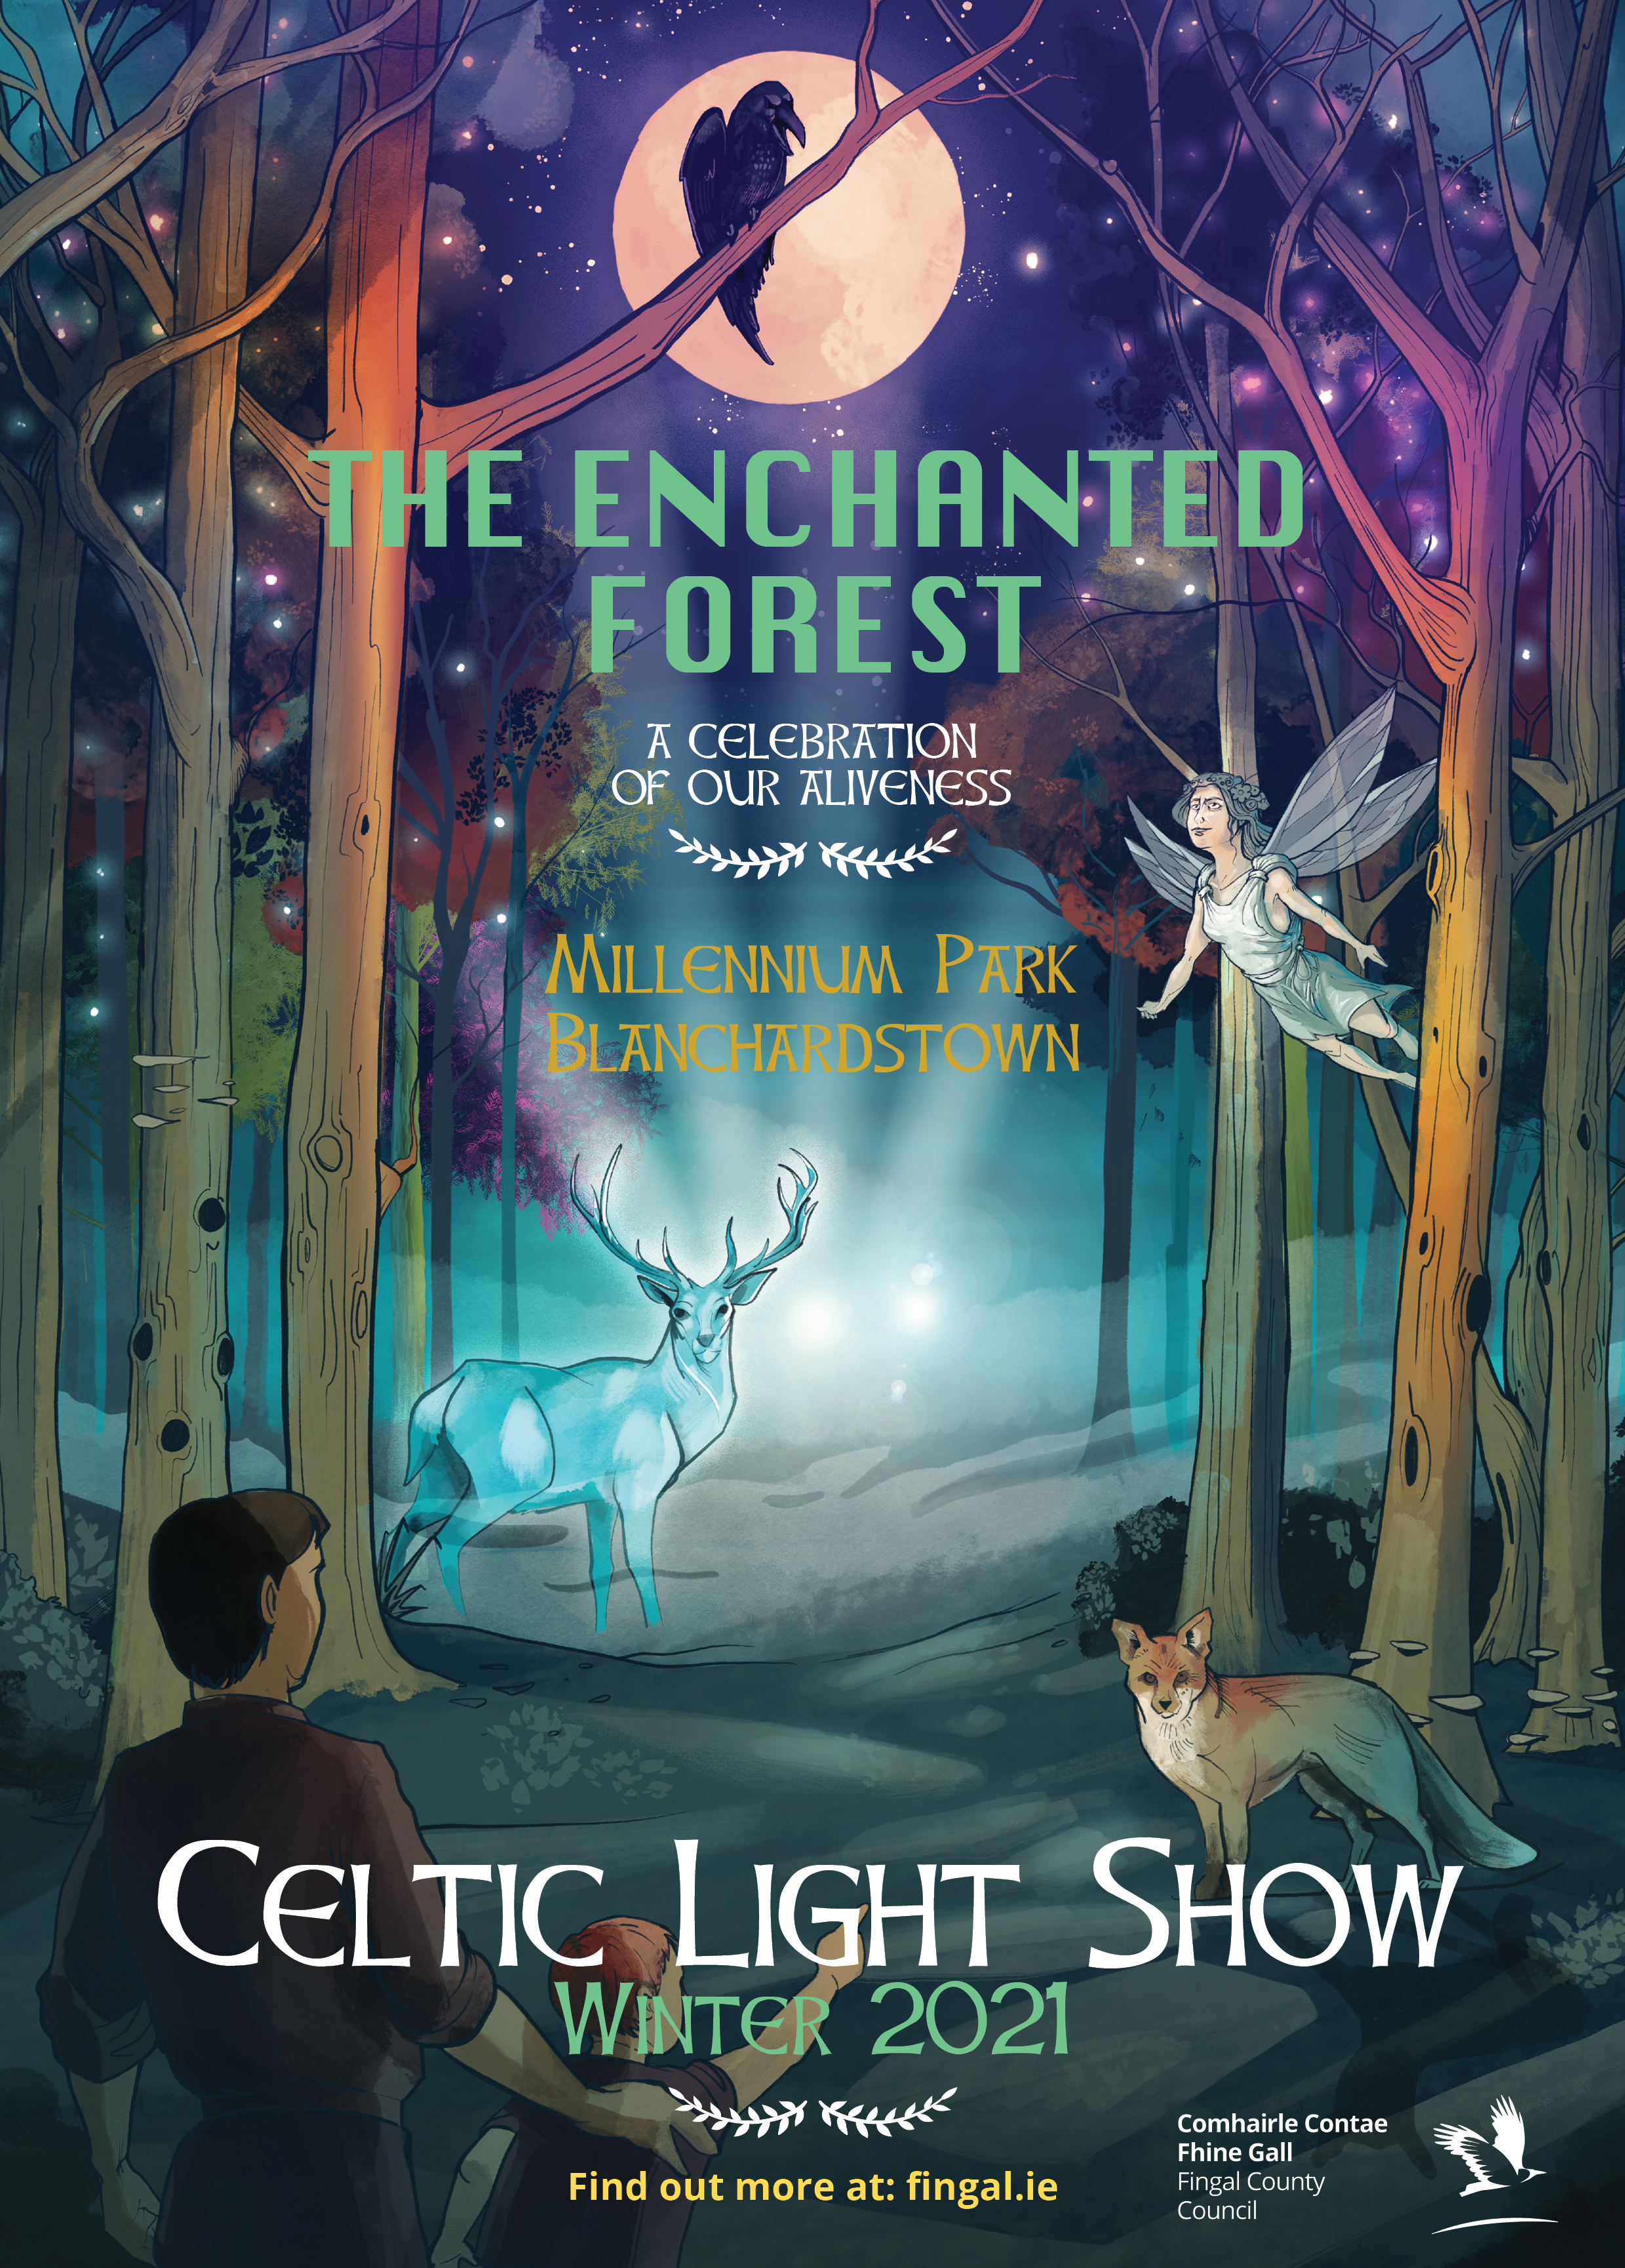 Enchanted forest, fairies, deer, lights